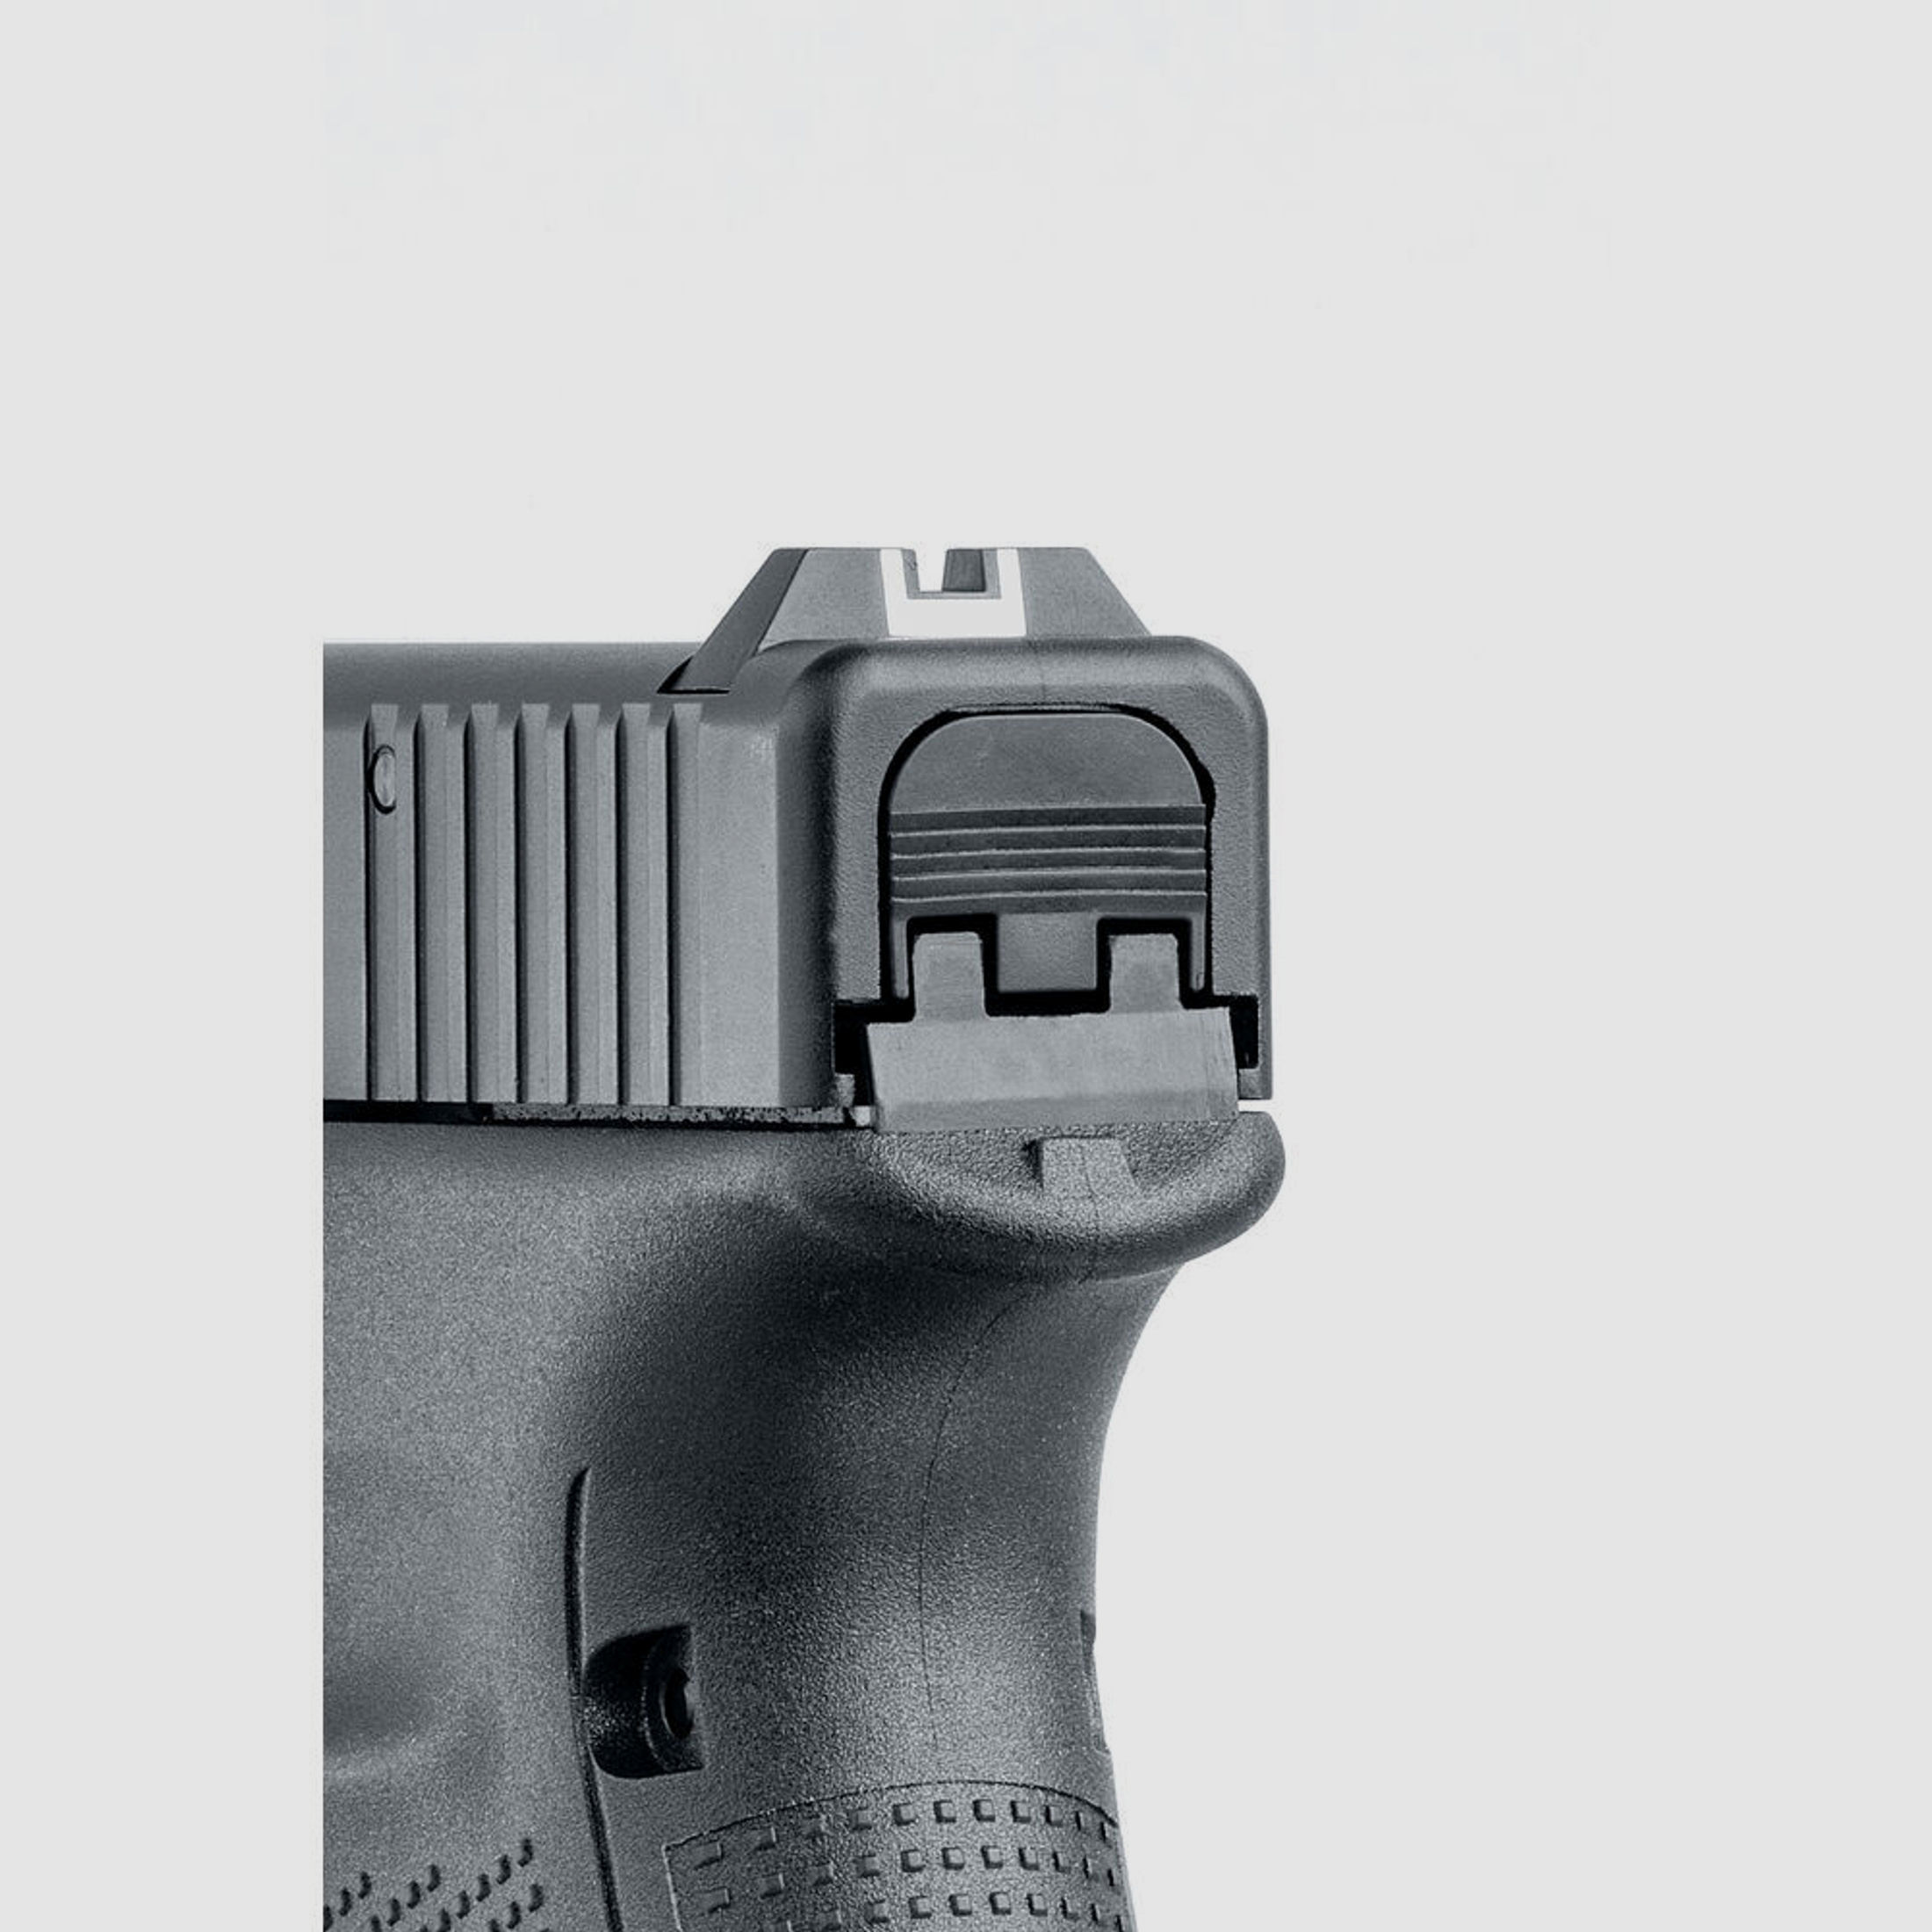 Glock 17 Gen5 Schreckschusspistole im Set mit Holster, Ersatzmagazin, Munition, Ladehilfe